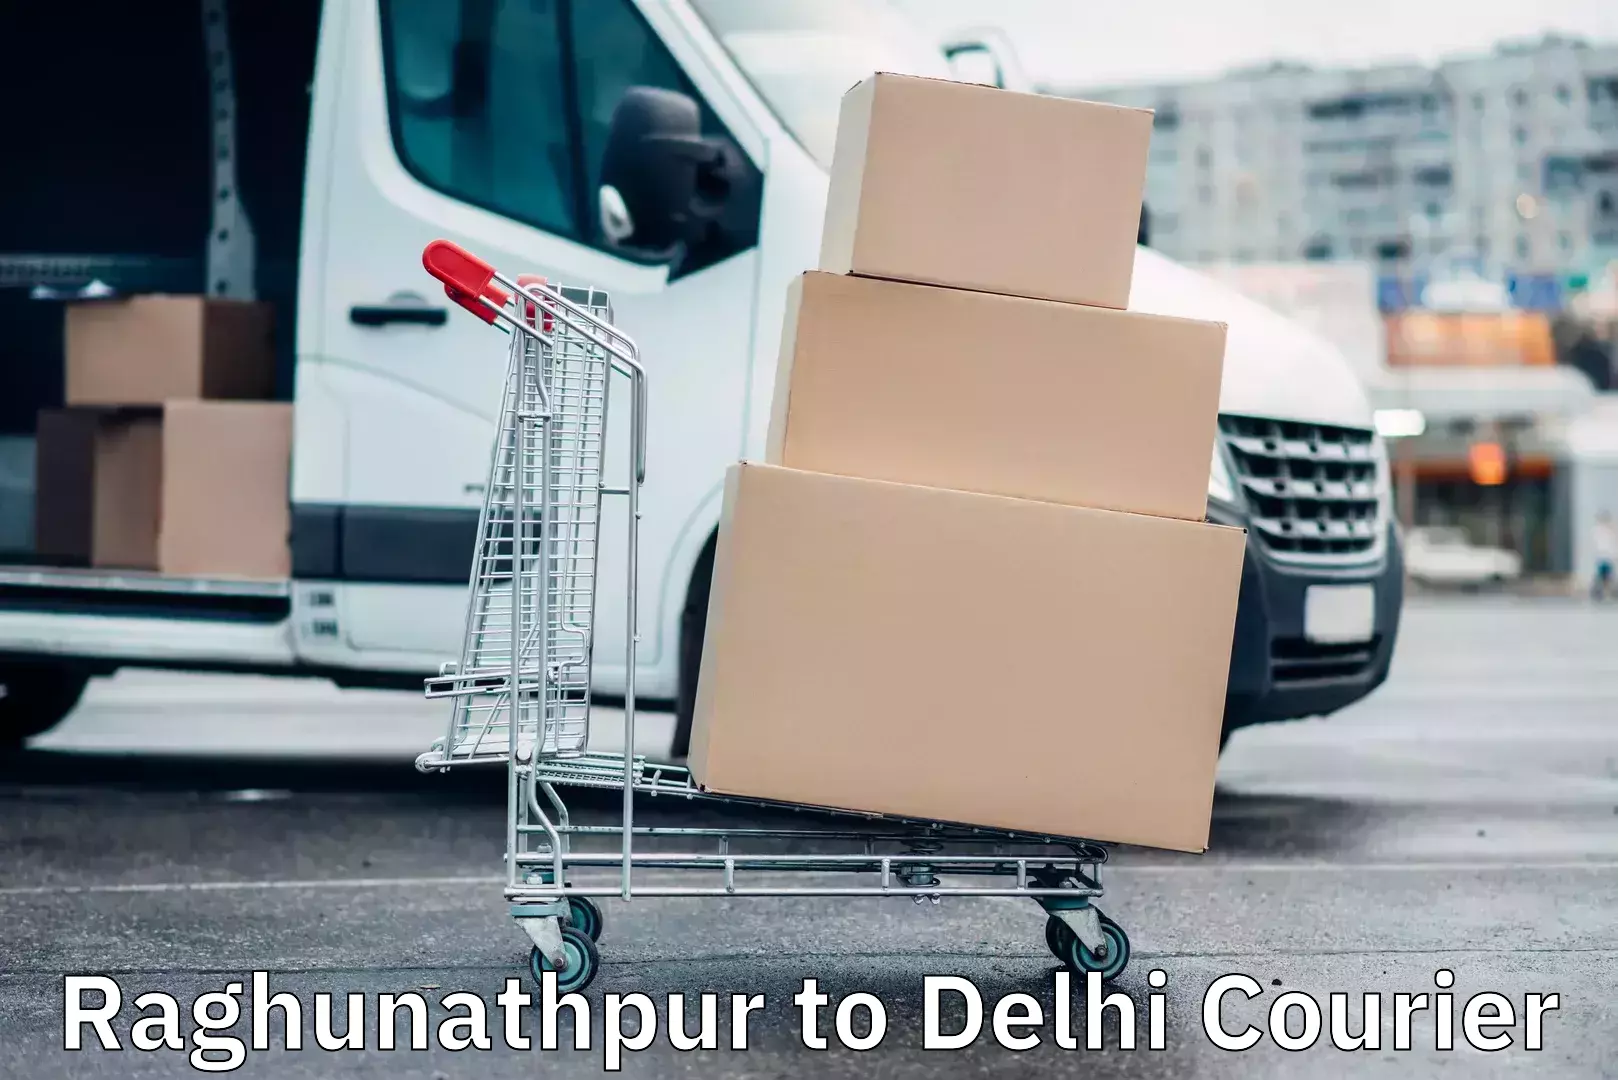 Weekend courier service Raghunathpur to Delhi